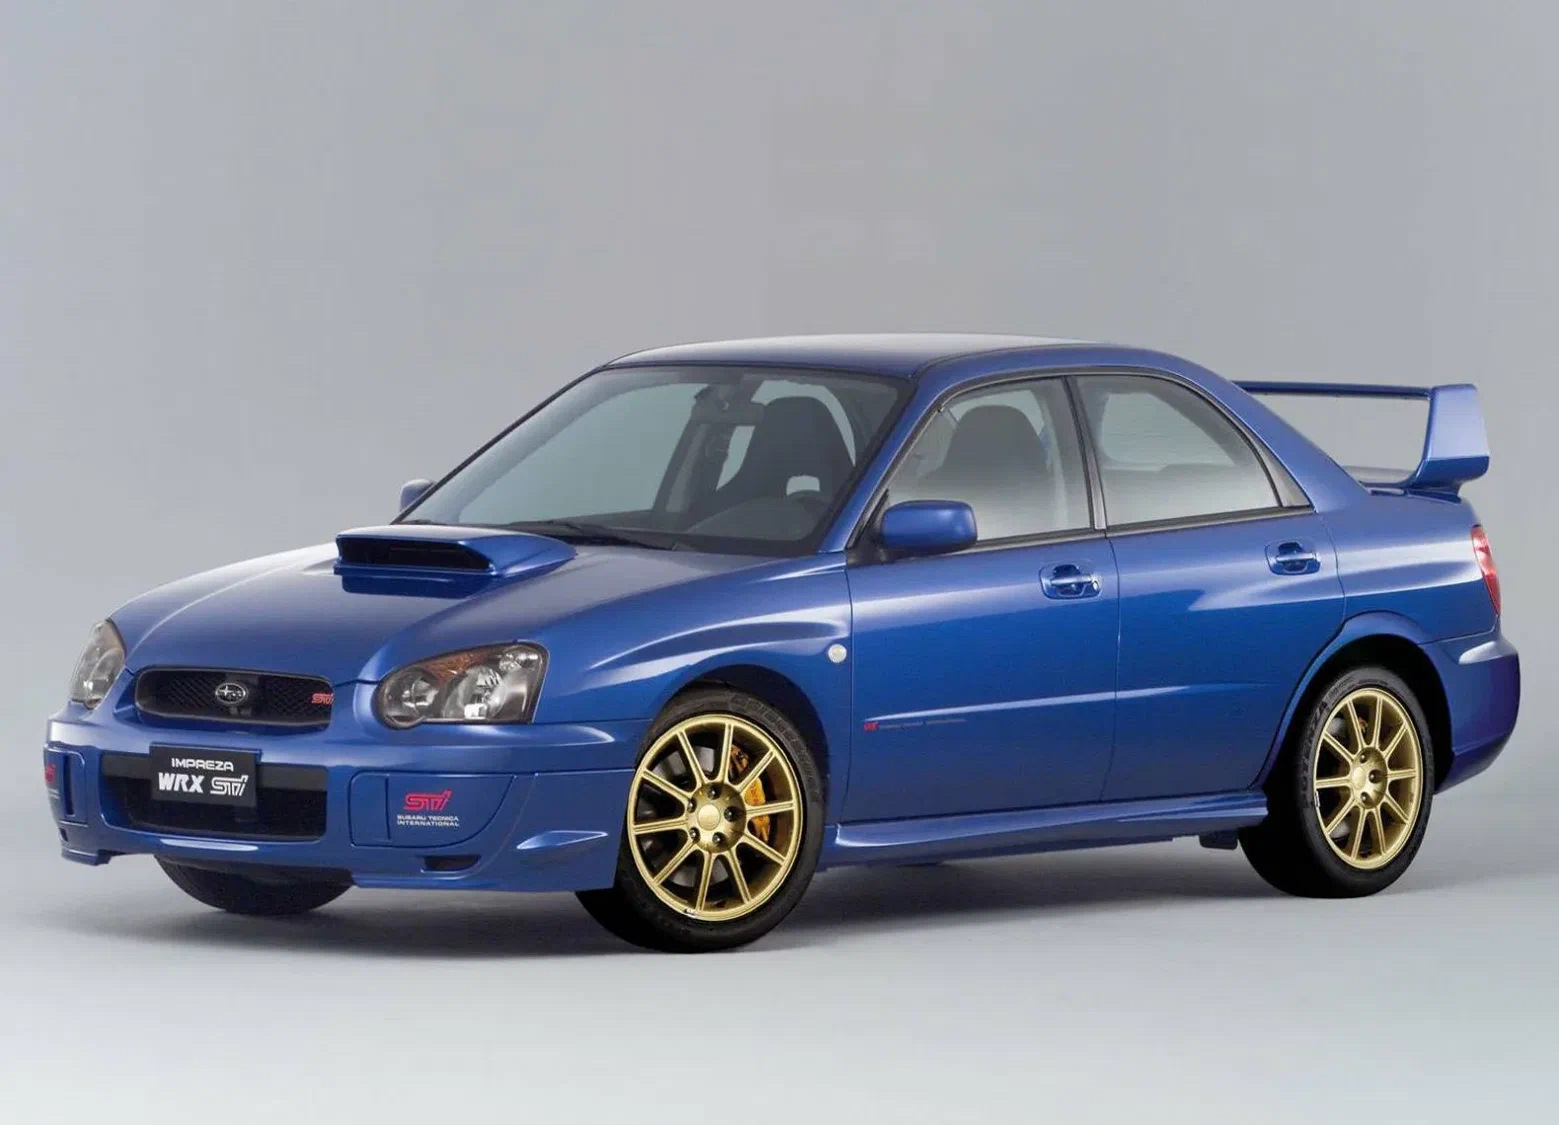 Wrx sti 2004. Subaru Impreza WRX STI 2004. Subaru Impreza WRX STI 2005. Subaru Impreza WRX 2004. Subaru Impreza WRX STI 2003.